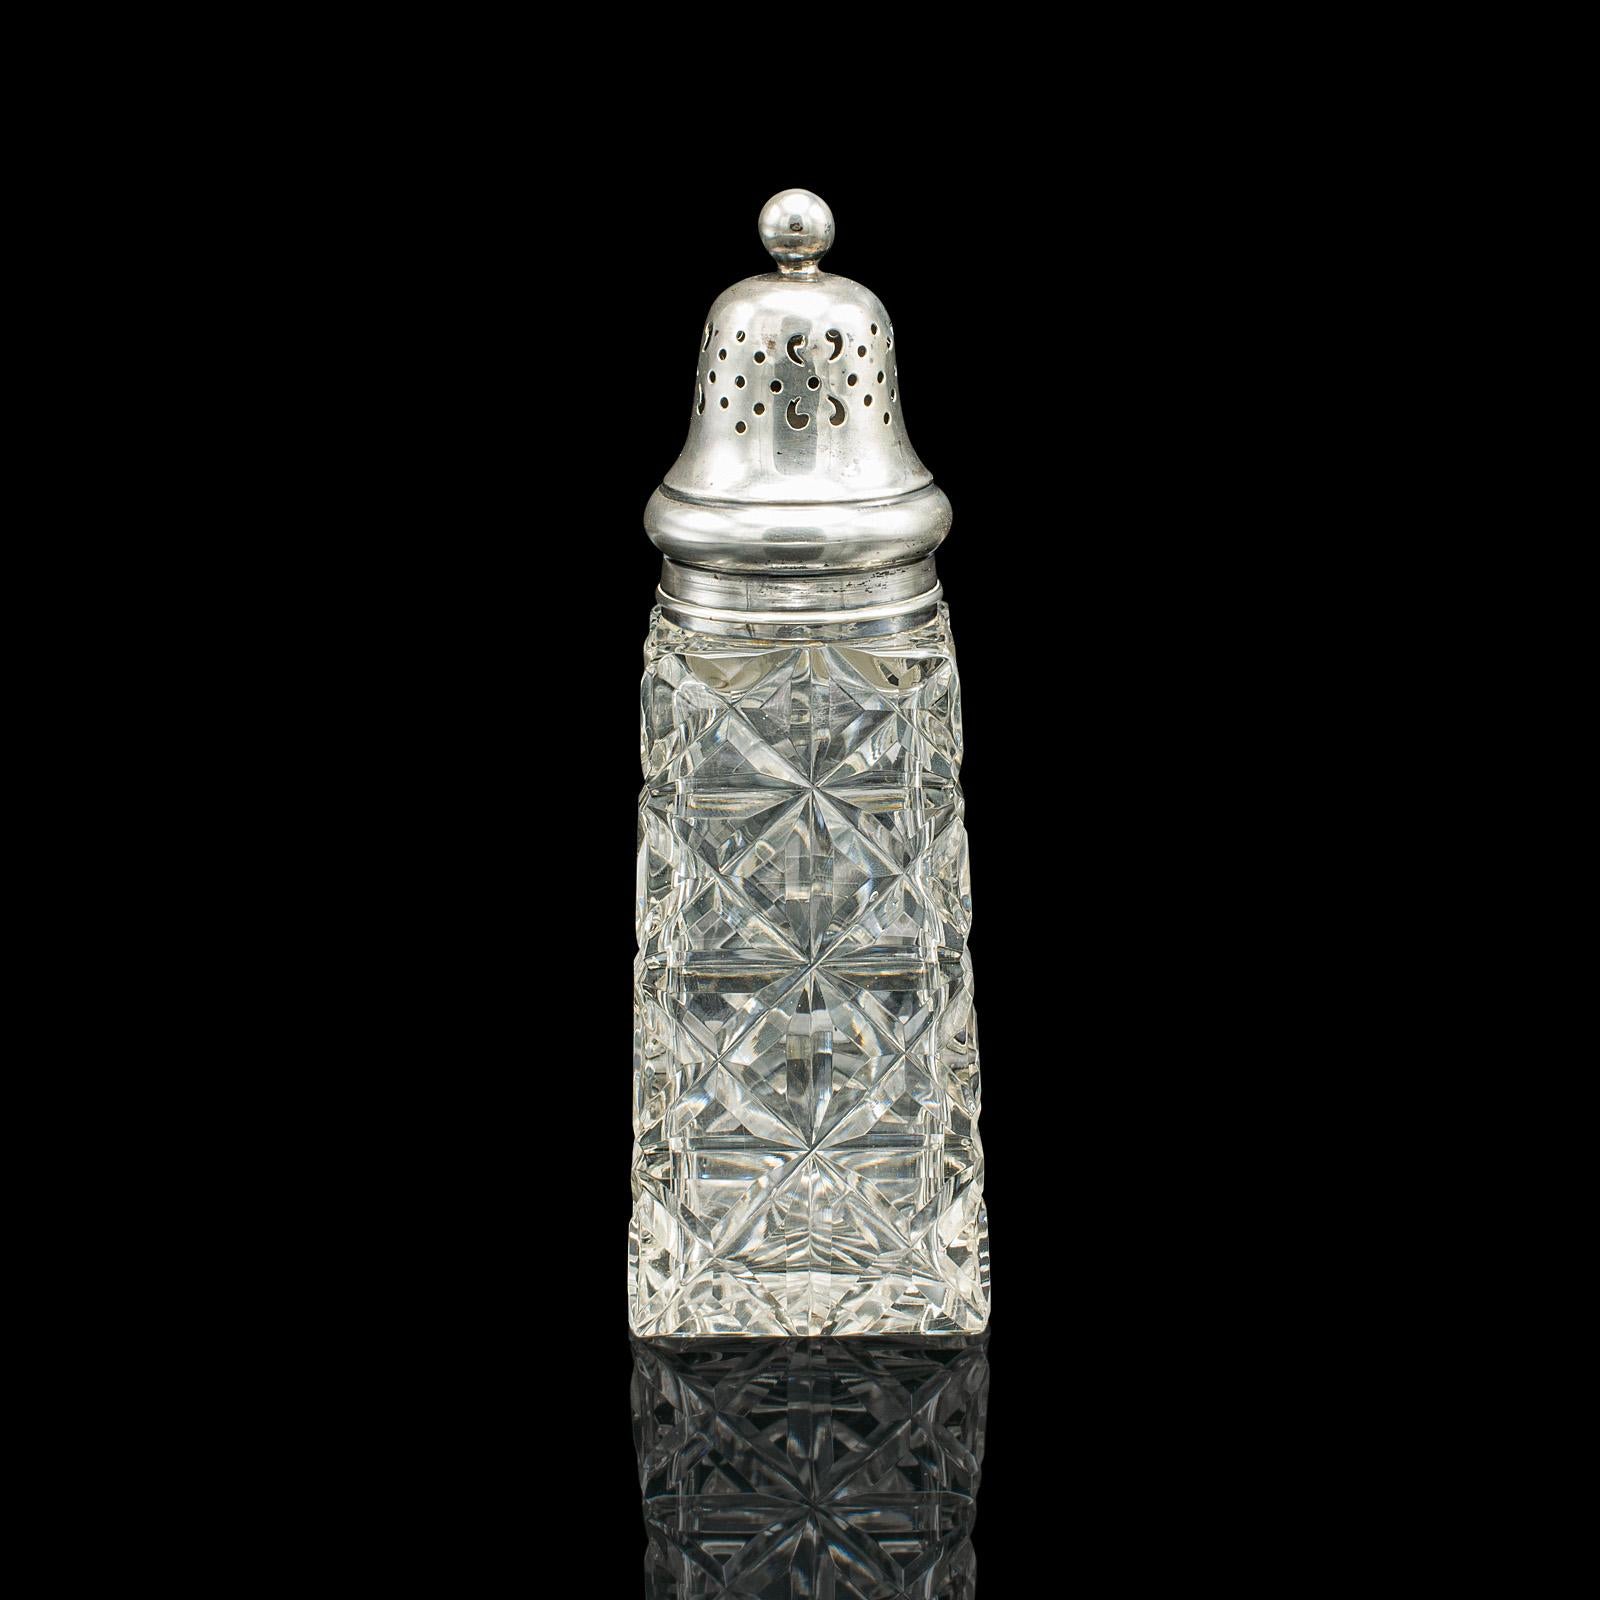 Il s'agit d'une shakers vintage. Une roulette anglaise en verre taillé et argent sterling de James Deakin & Son, datant du début du 20e siècle, poinçonnée en 1929.

Ajoutez une touche de glamour à la table du petit-déjeuner ou au thé de